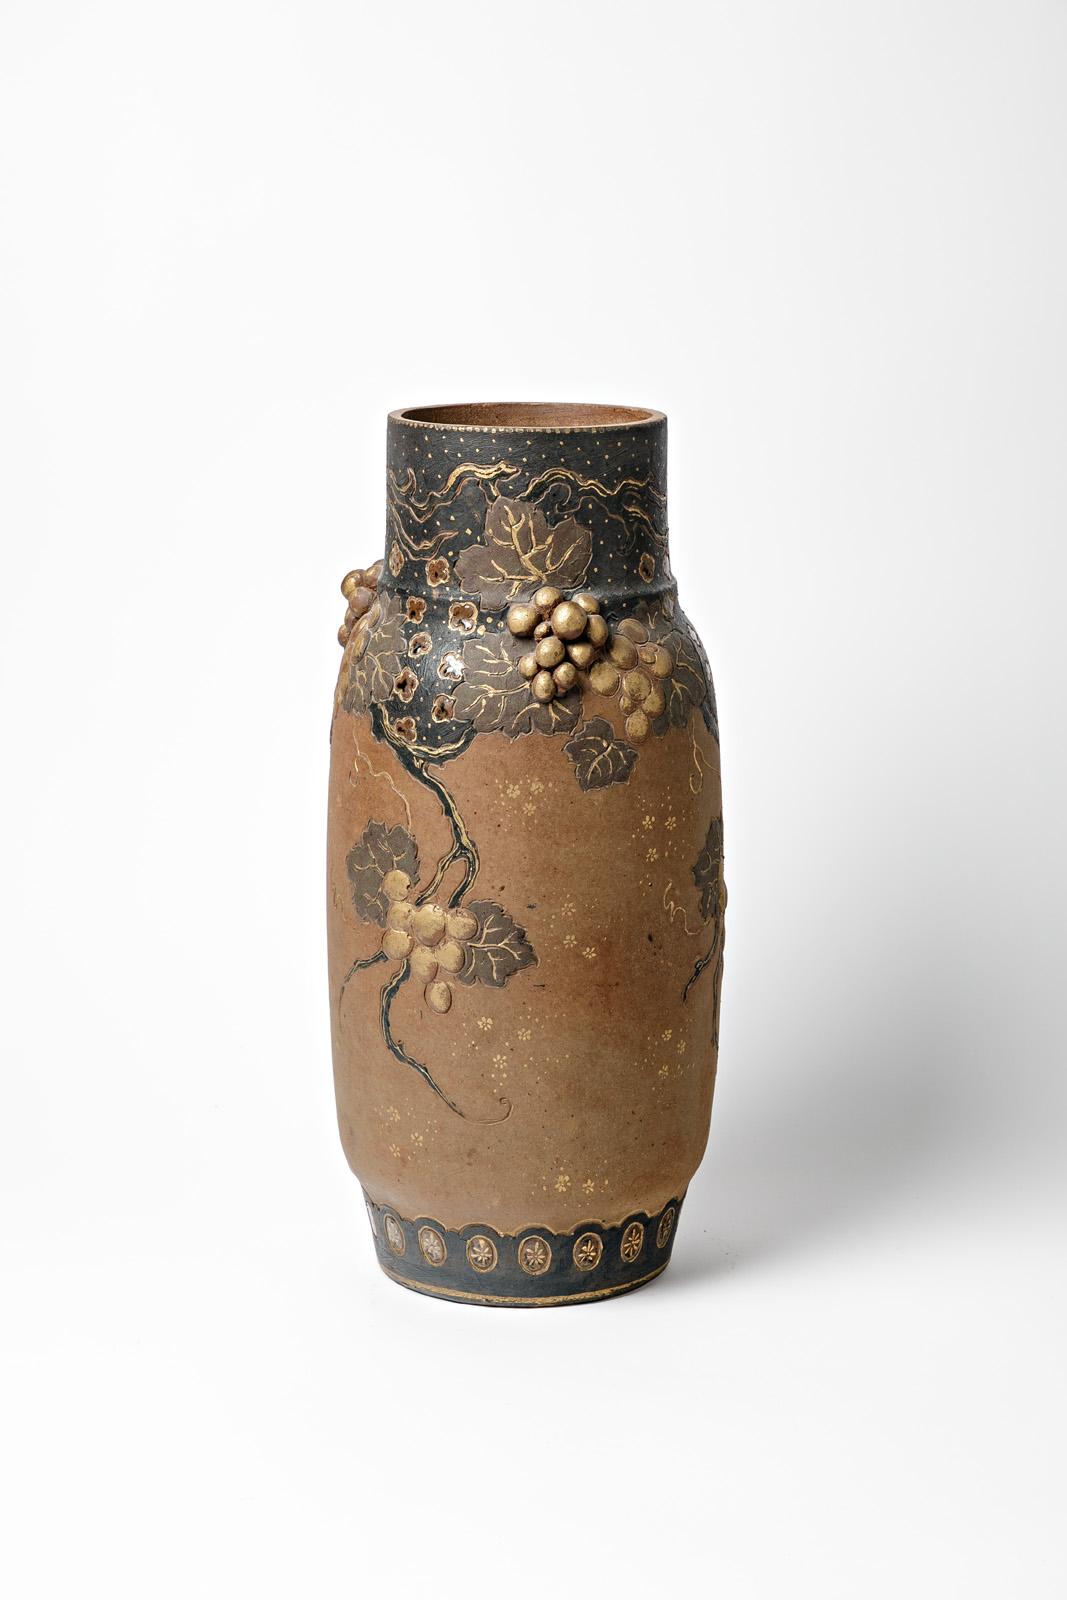 French Ernest Chaplet Large Art Nouveau 1900 Blue and Brown Ceramic Vase Asian Decor